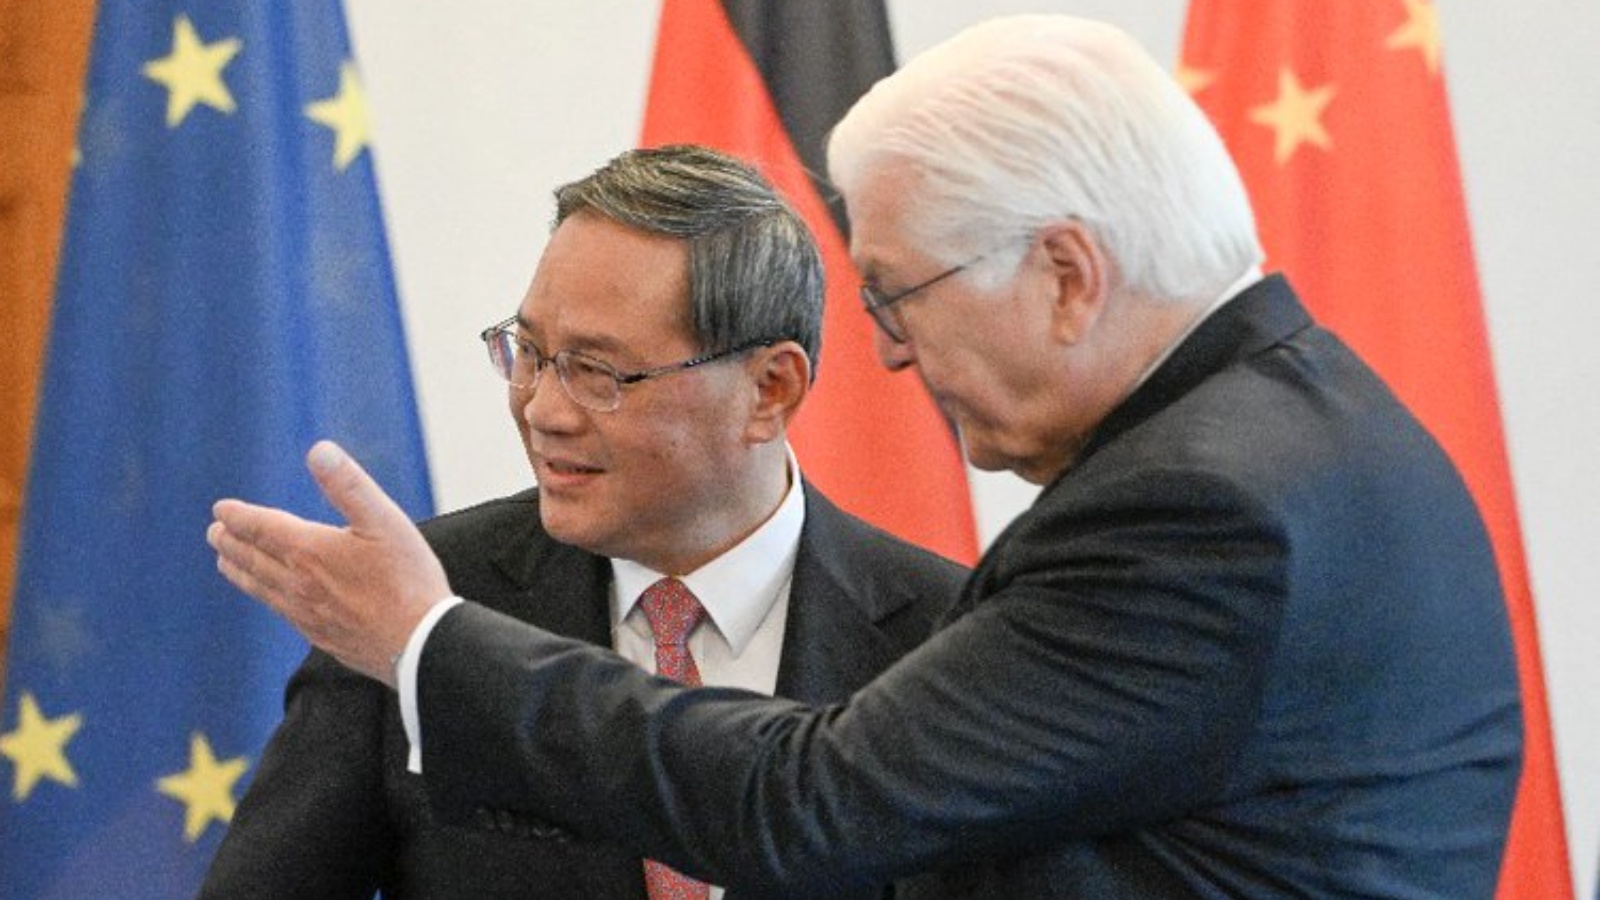 الرئيس الألماني فرانك فالتر شتاينماير (إلى اليمين) ورئيس الوزراء الصيني لي تشيانغ يتصافحان في قصر بلفيو الرئاسي في برلين